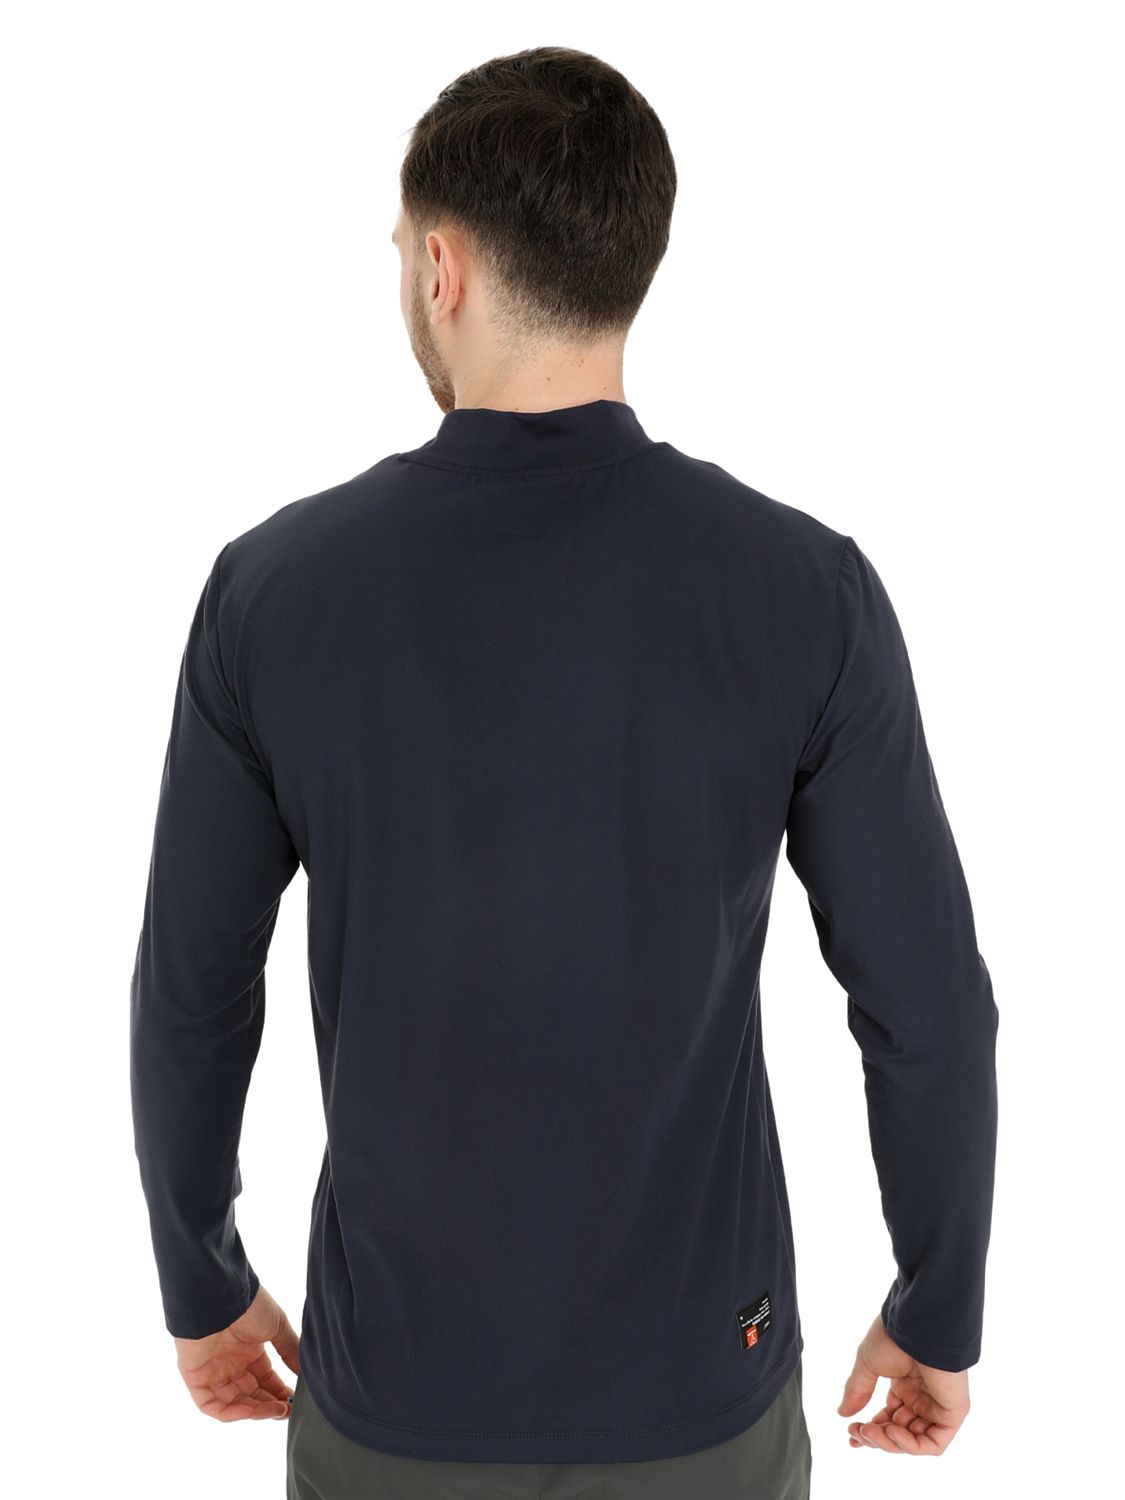 Футболка с длинным рукавом Toread Men's long-sleeve T-shirt Navy blue